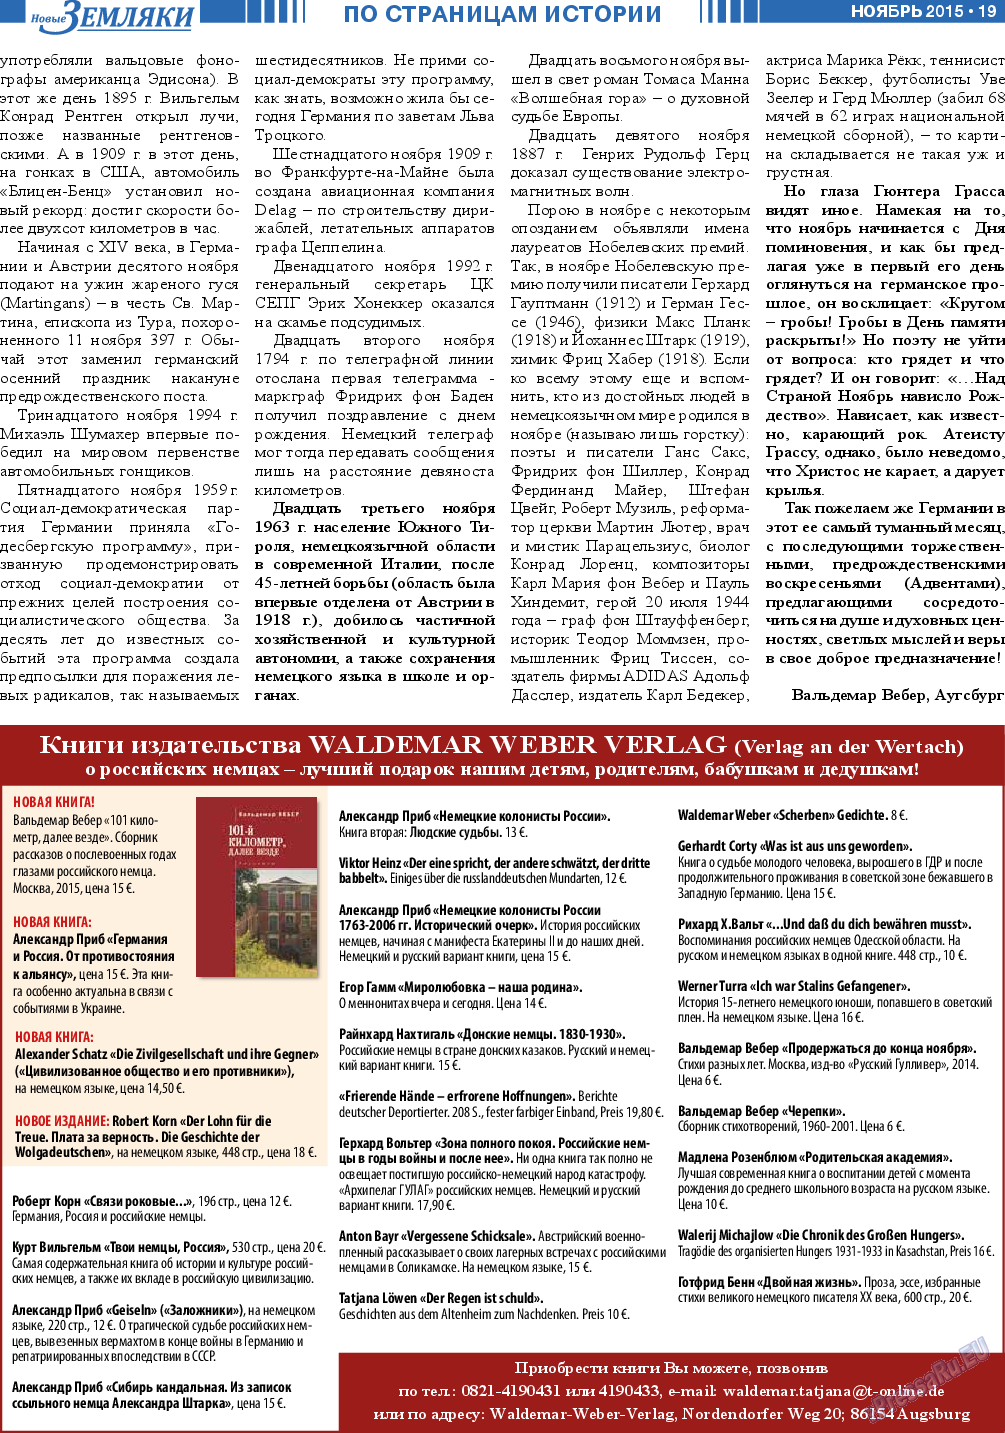 Новые Земляки (газета). 2015 год, номер 11, стр. 19